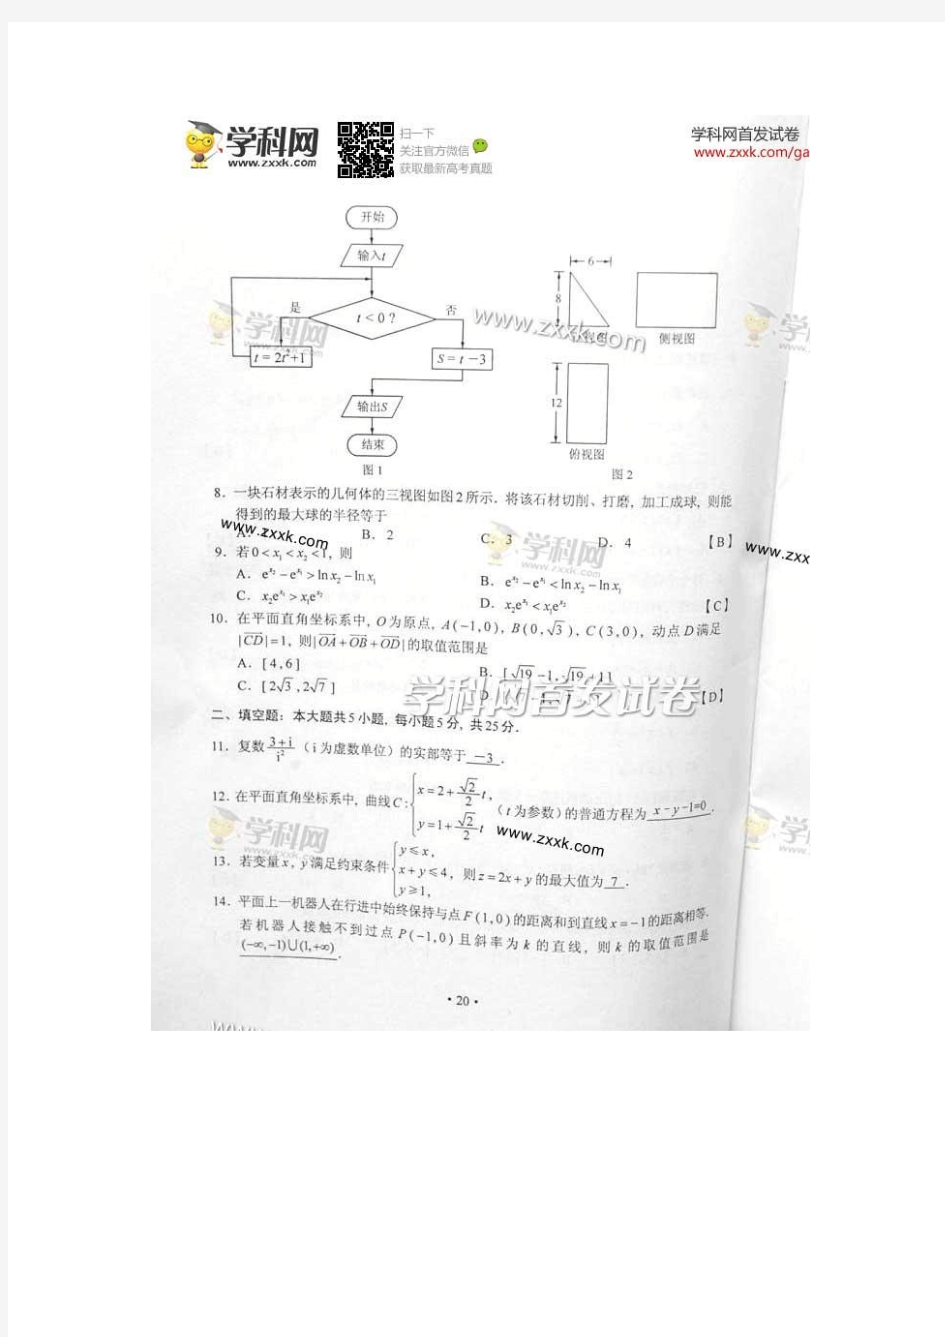 2014年高考文科数学湖南卷真题附标准答案(抢鲜版)